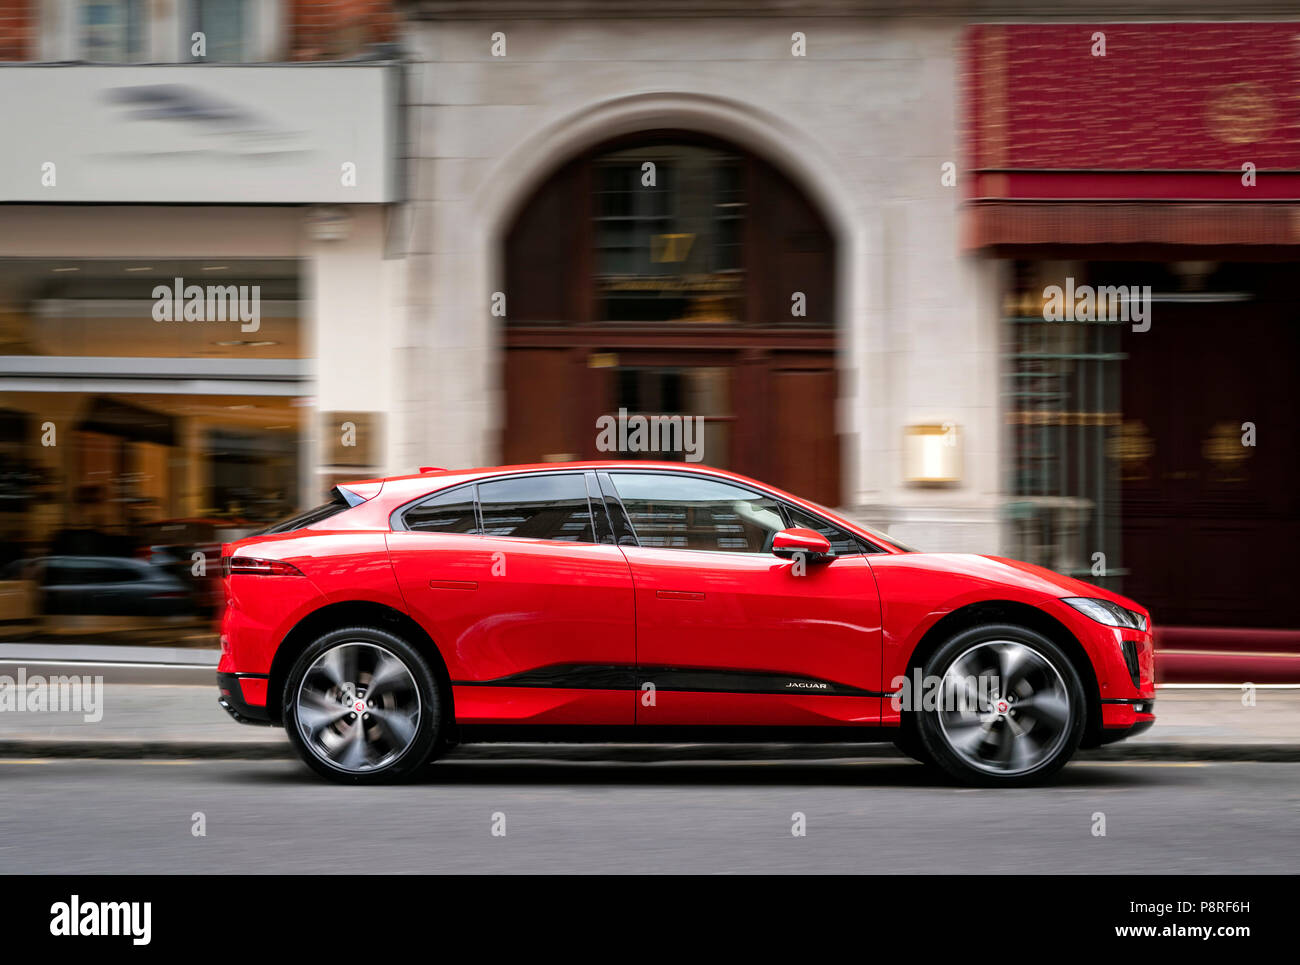 Jaguar i Ritmo de automóviles eléctricos en Londres central London UK Foto de stock